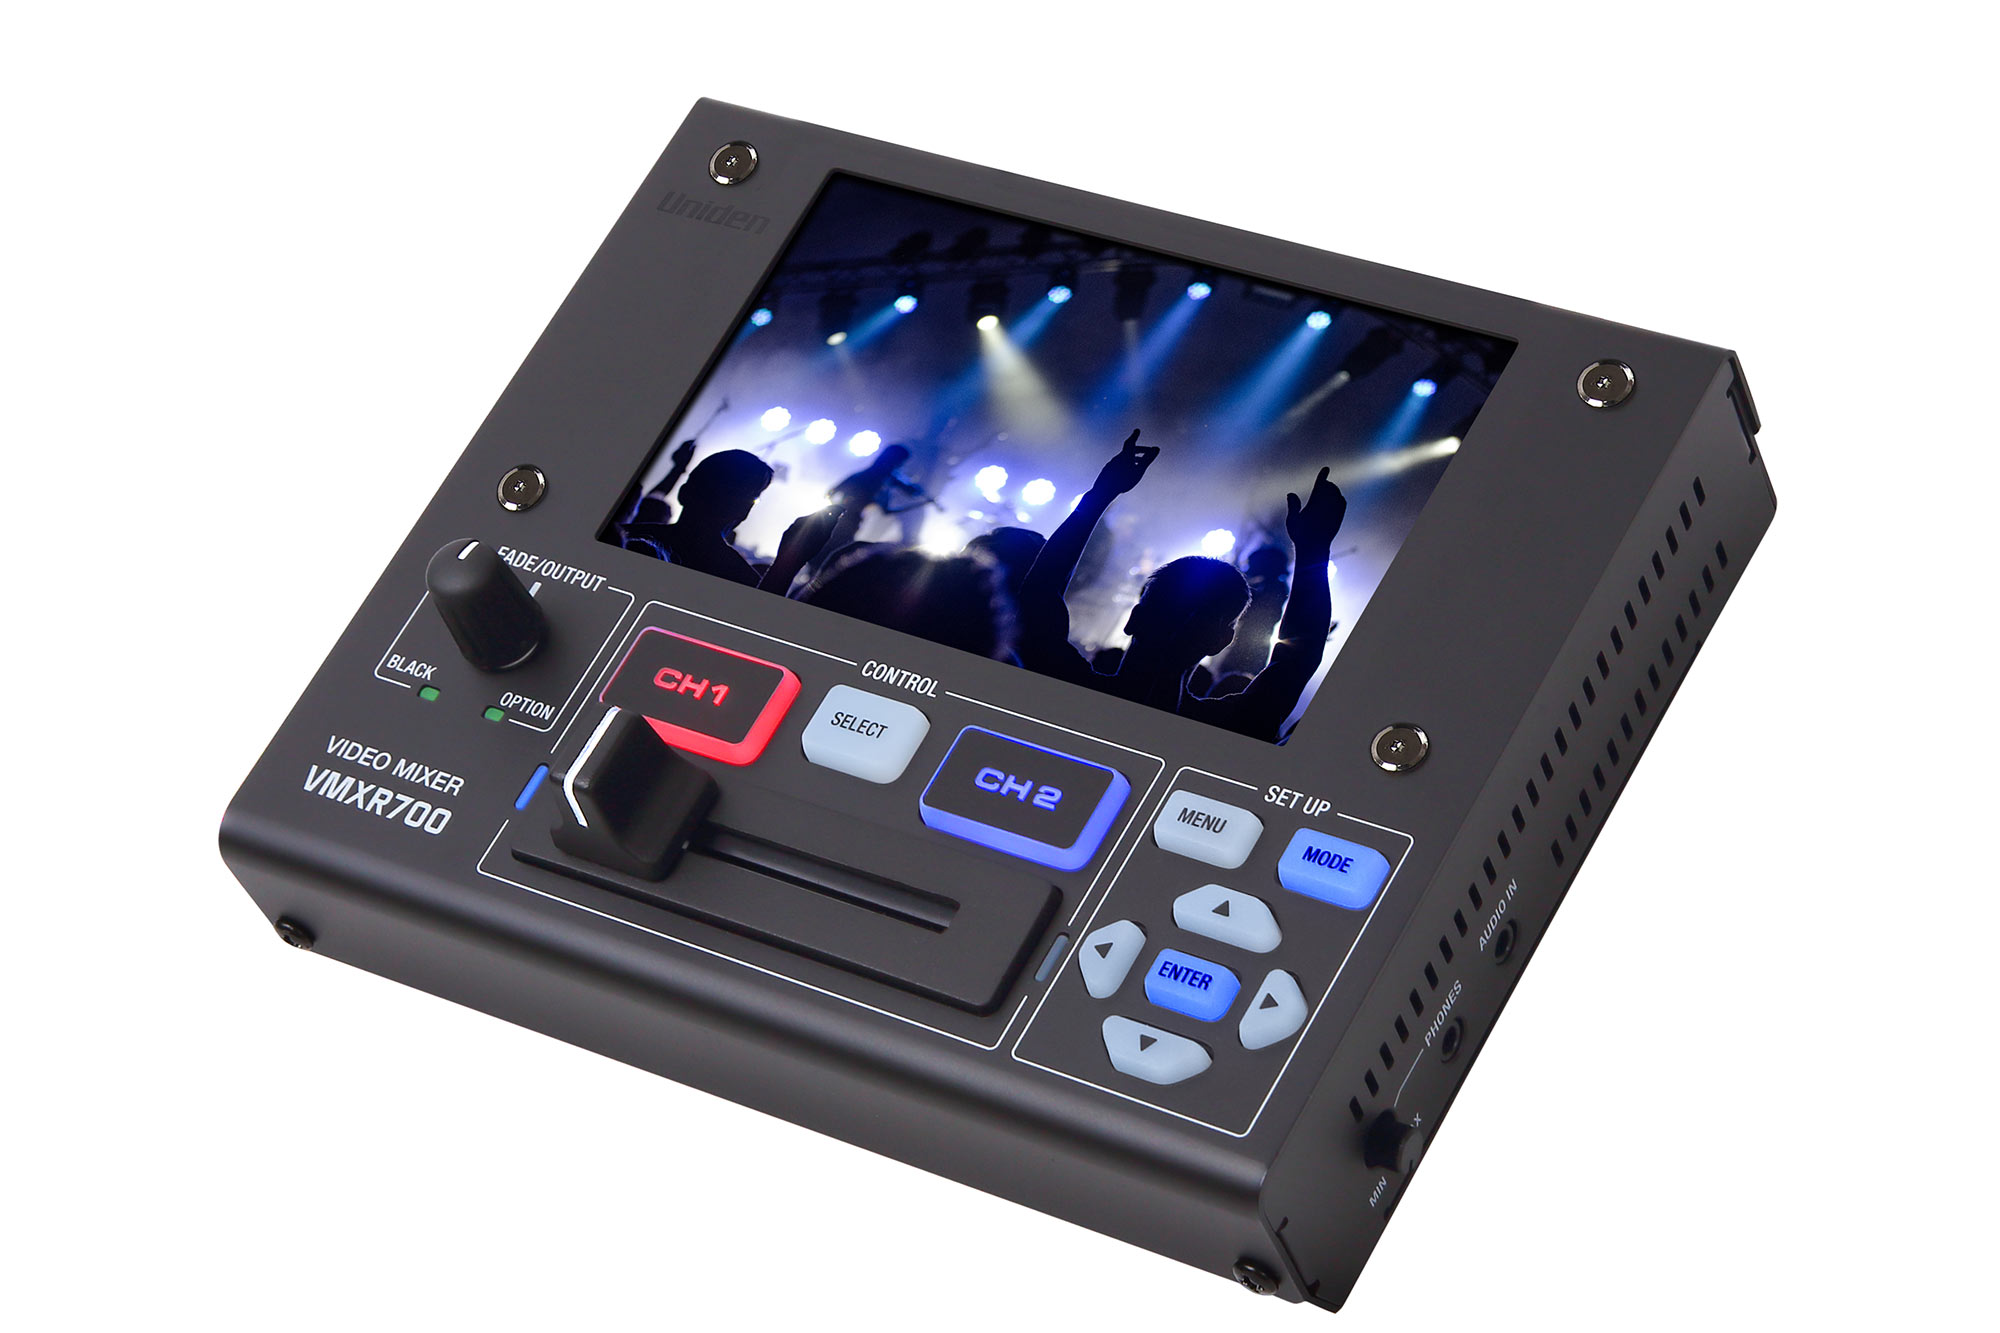 ユニデン 液晶モニターを搭載したポータブルビデオミキサー Vmxr700を発売 Video Salon